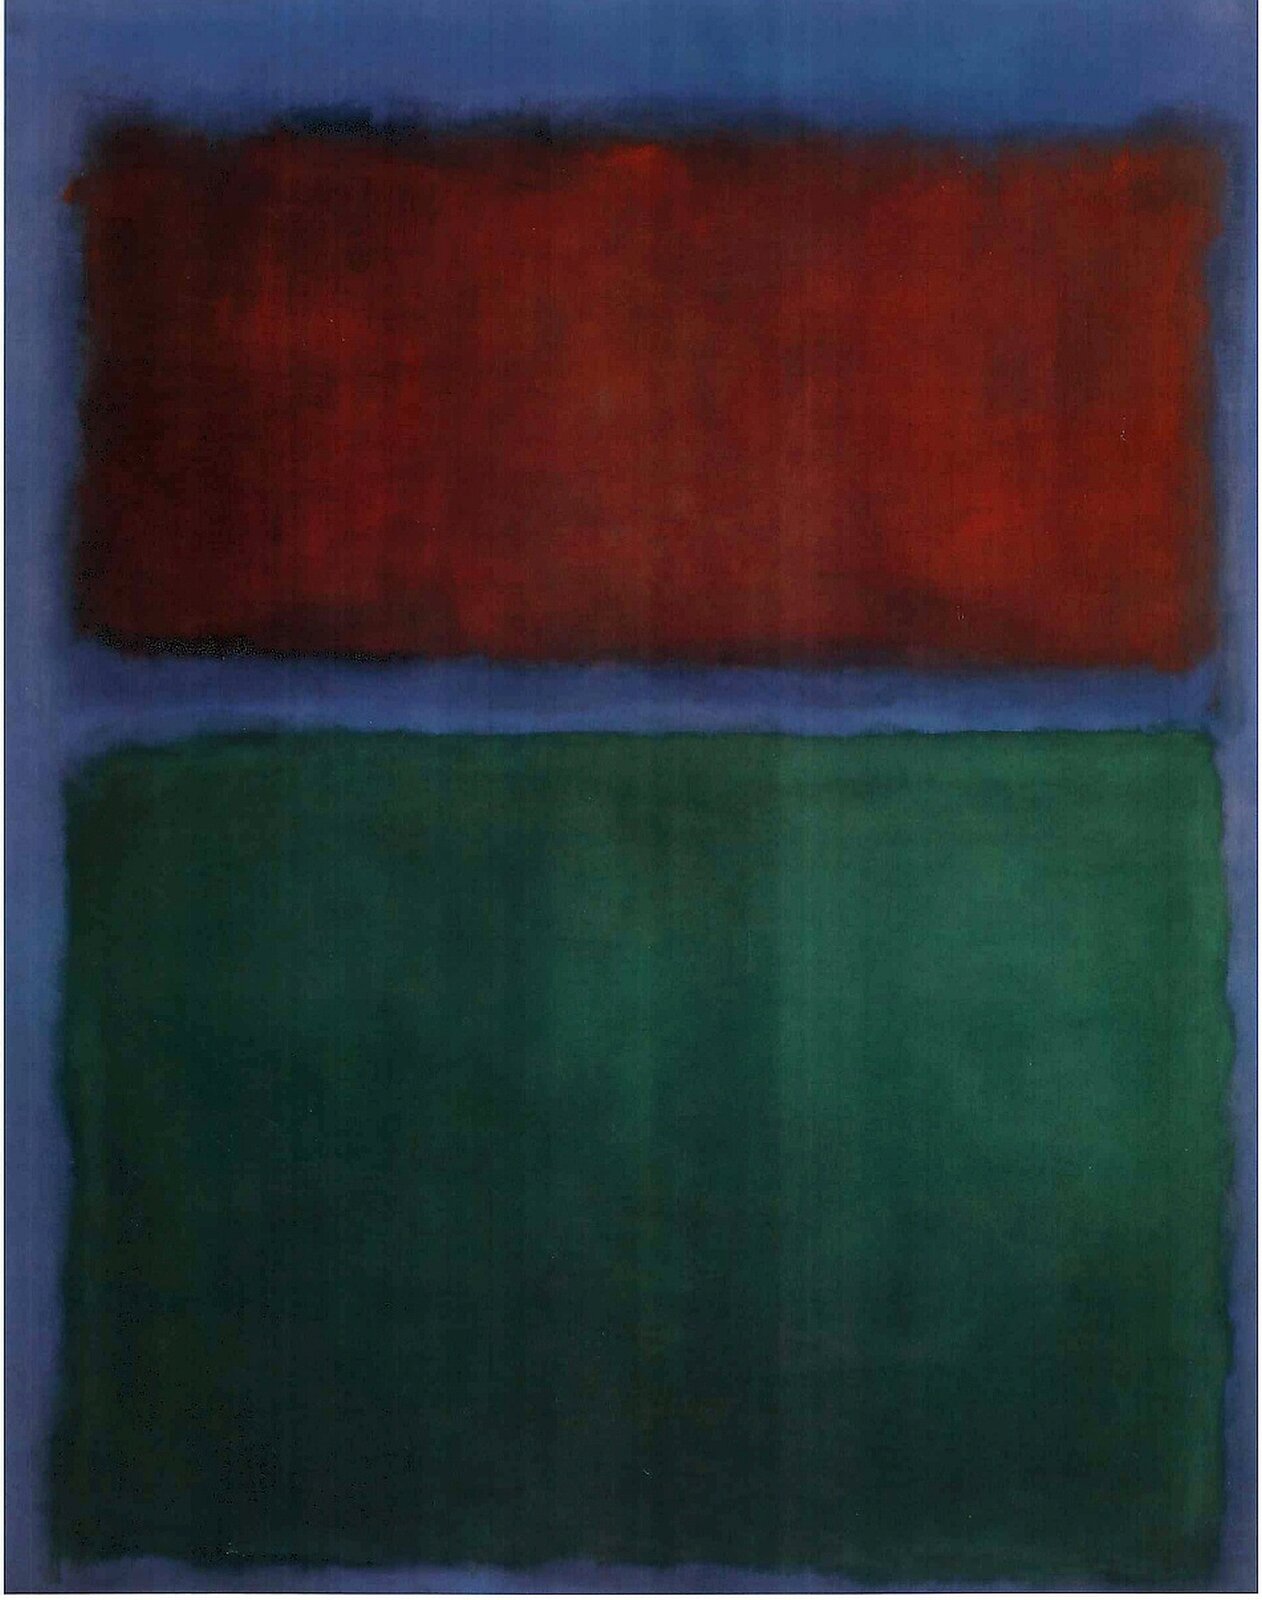 Ilustracja przedstawia obraz Marka Rothko, „Ziemia i zieleń”. Są to dwa prostokąty umieszczone jeden pod drugim. Górny jest w kolorze czerwonym, a dolny ciemnym zielonym. Kolory nie są jaskrawe, a wyglądają na zabrudzone. Każdy z prostokątów ma nieregularną ramkę w kolorze niebieskim.